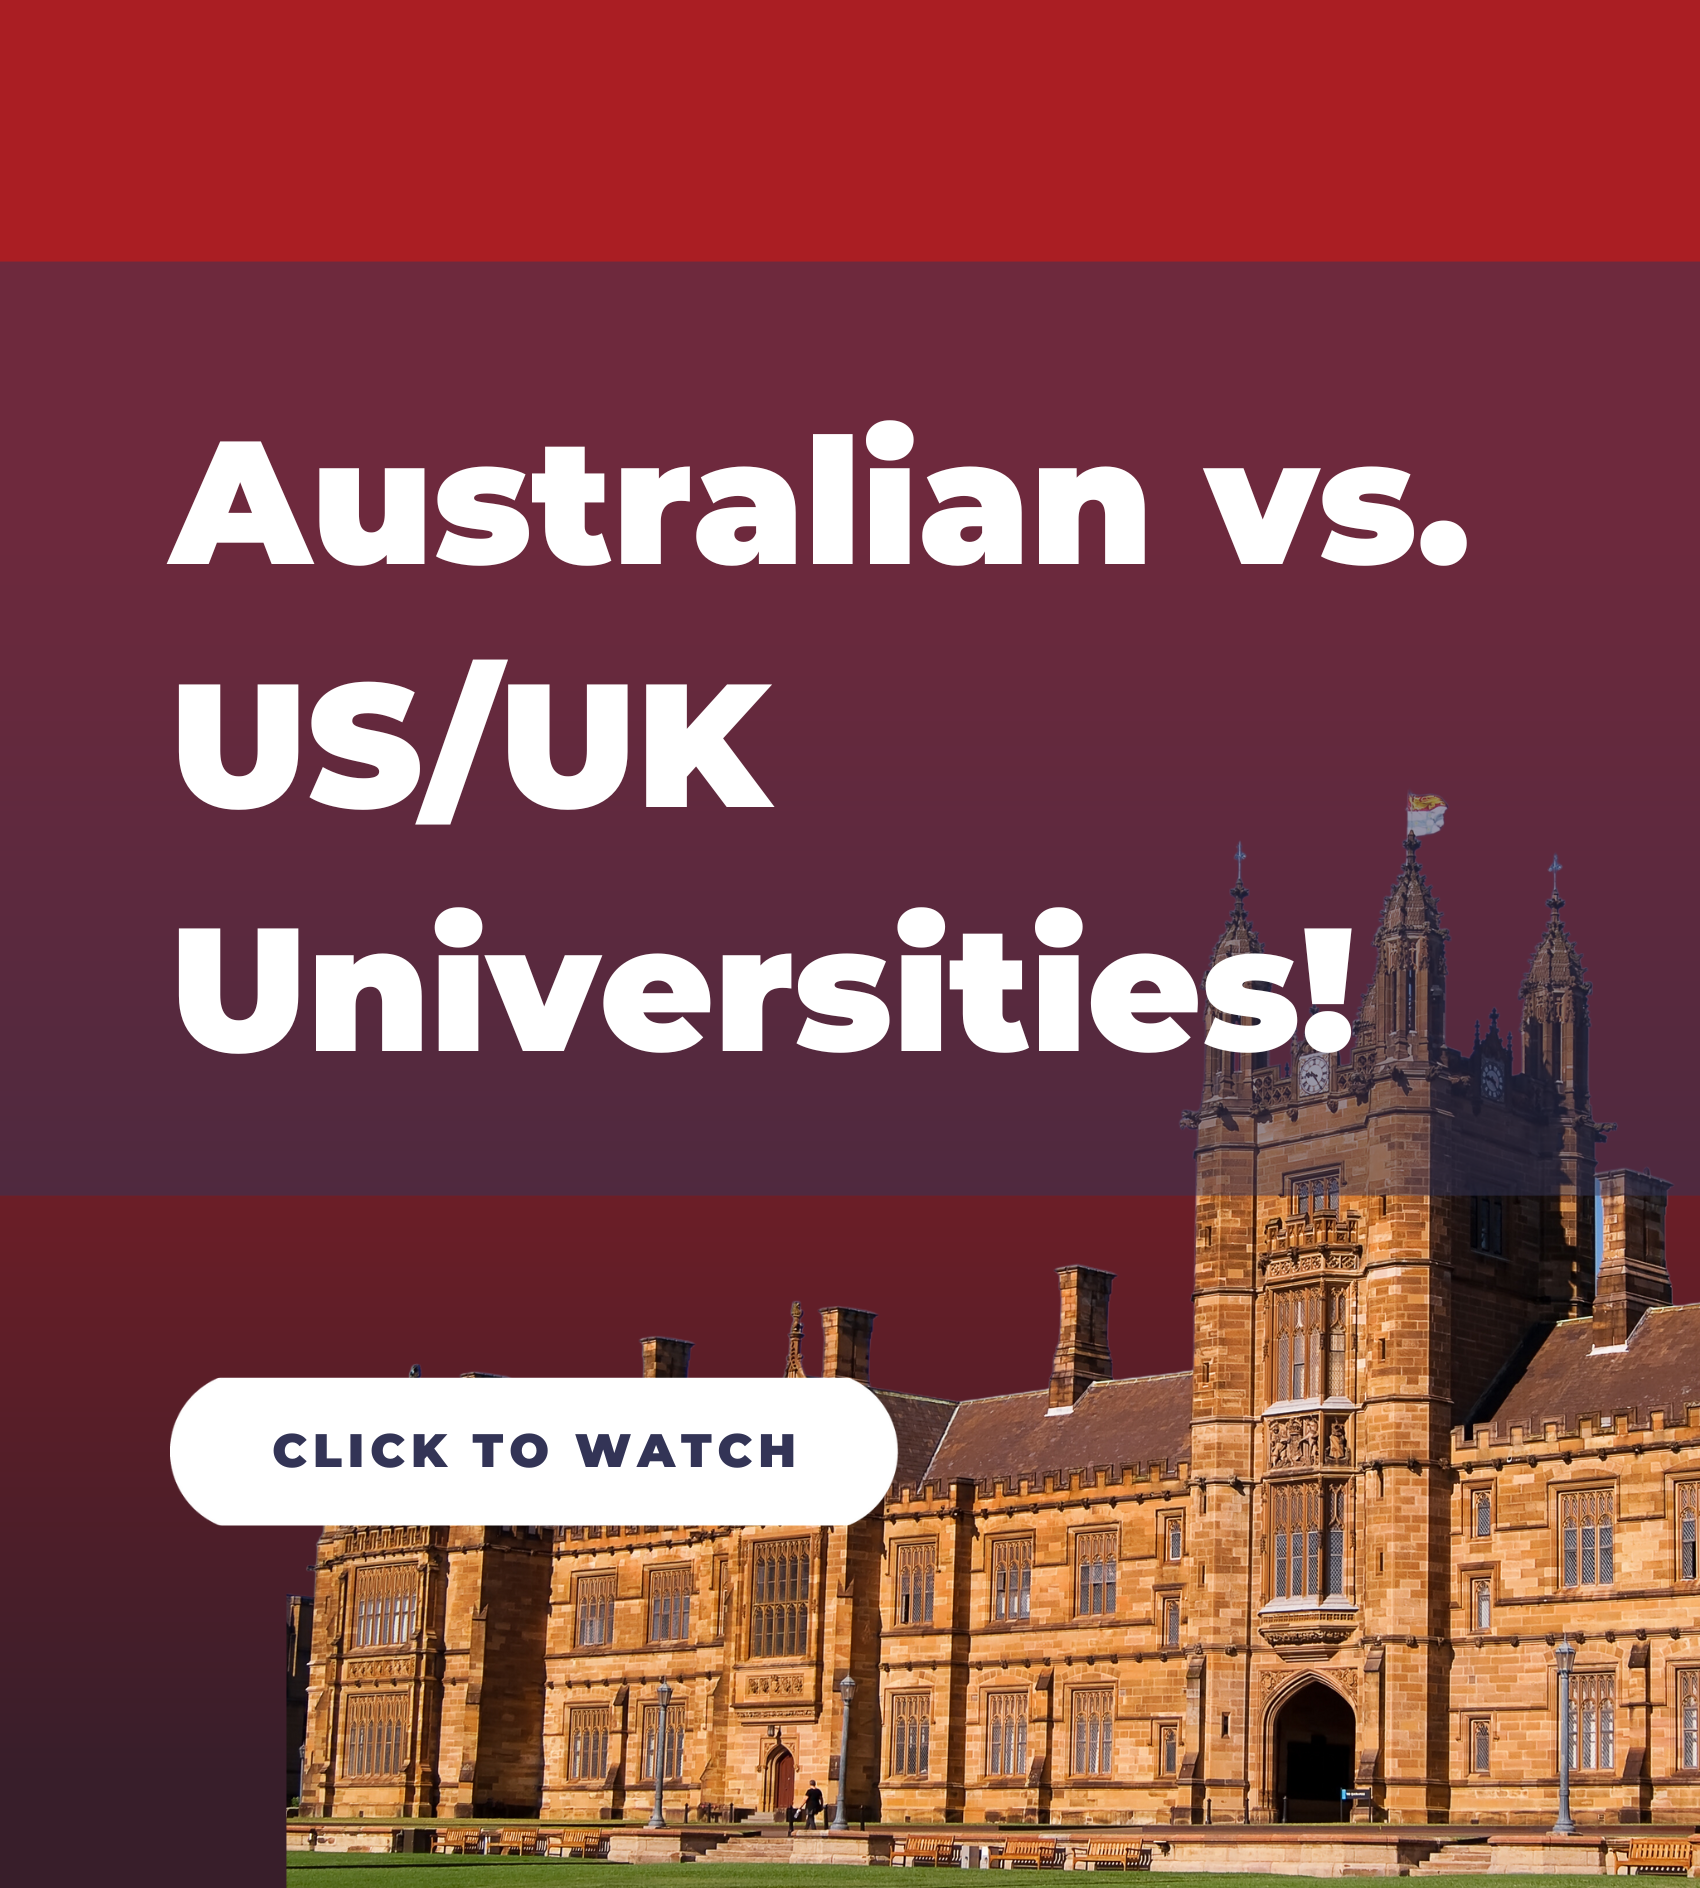 AU vs. US/UK Universities